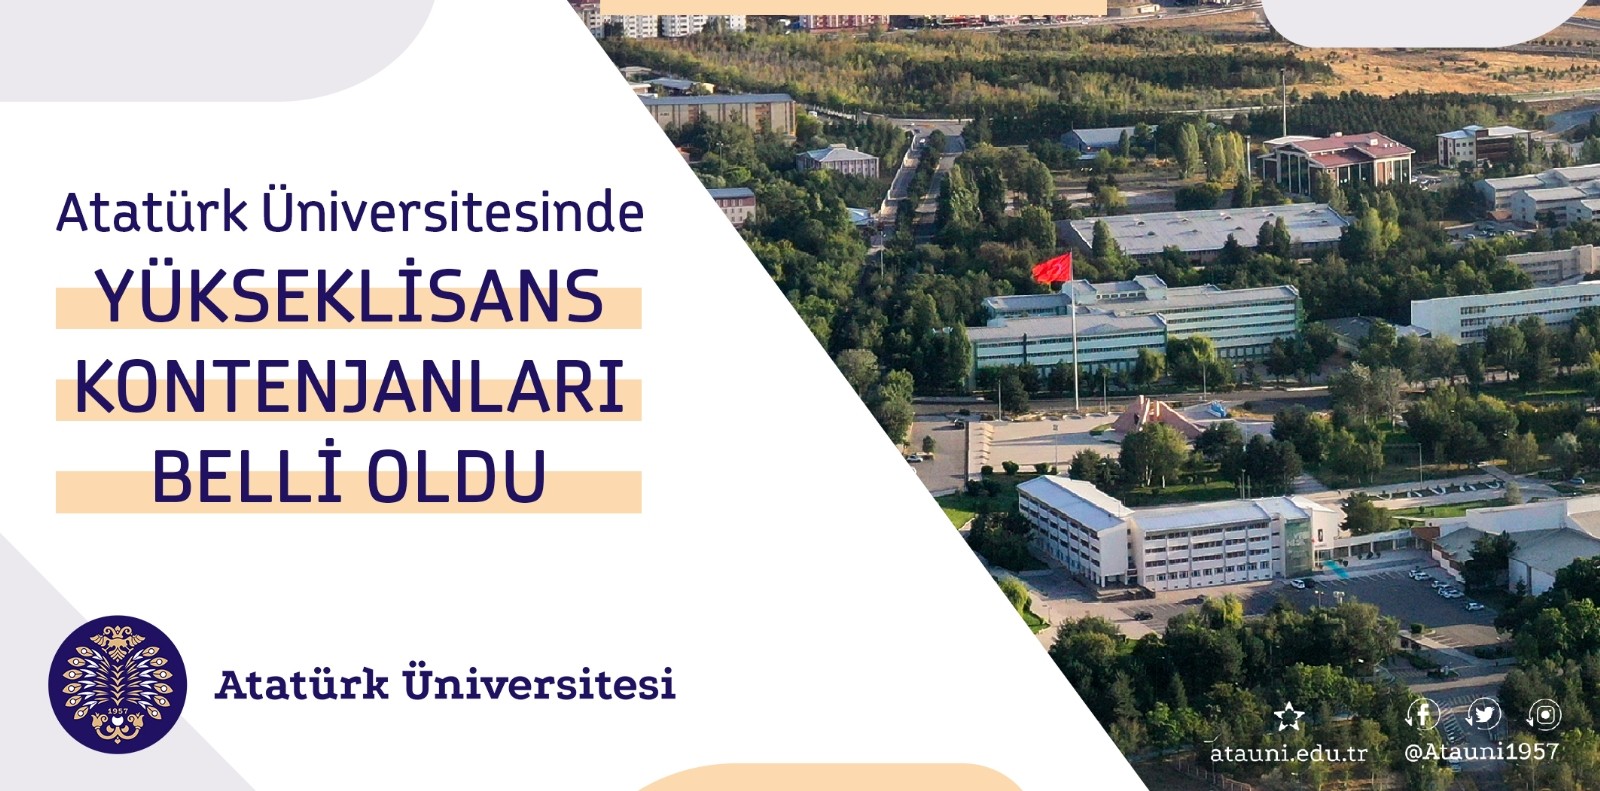 Atatürk Üniversitesi’nde lisansüstü kontenjanlar açıklandı